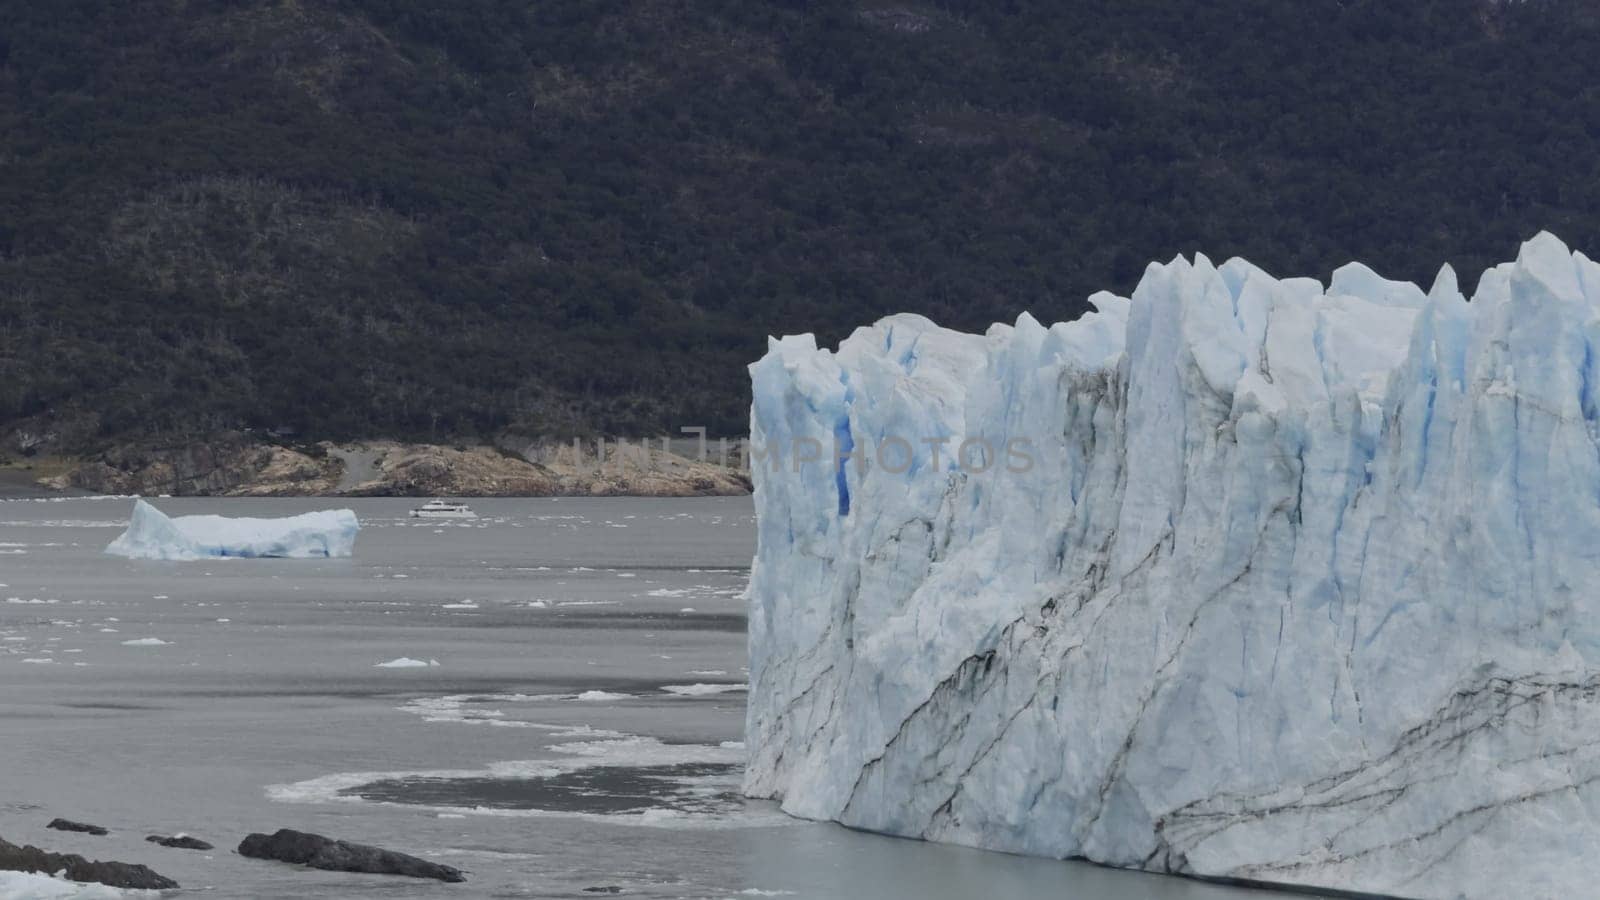 Tourist boat approaches Perito Moreno Glacier's immense walls.